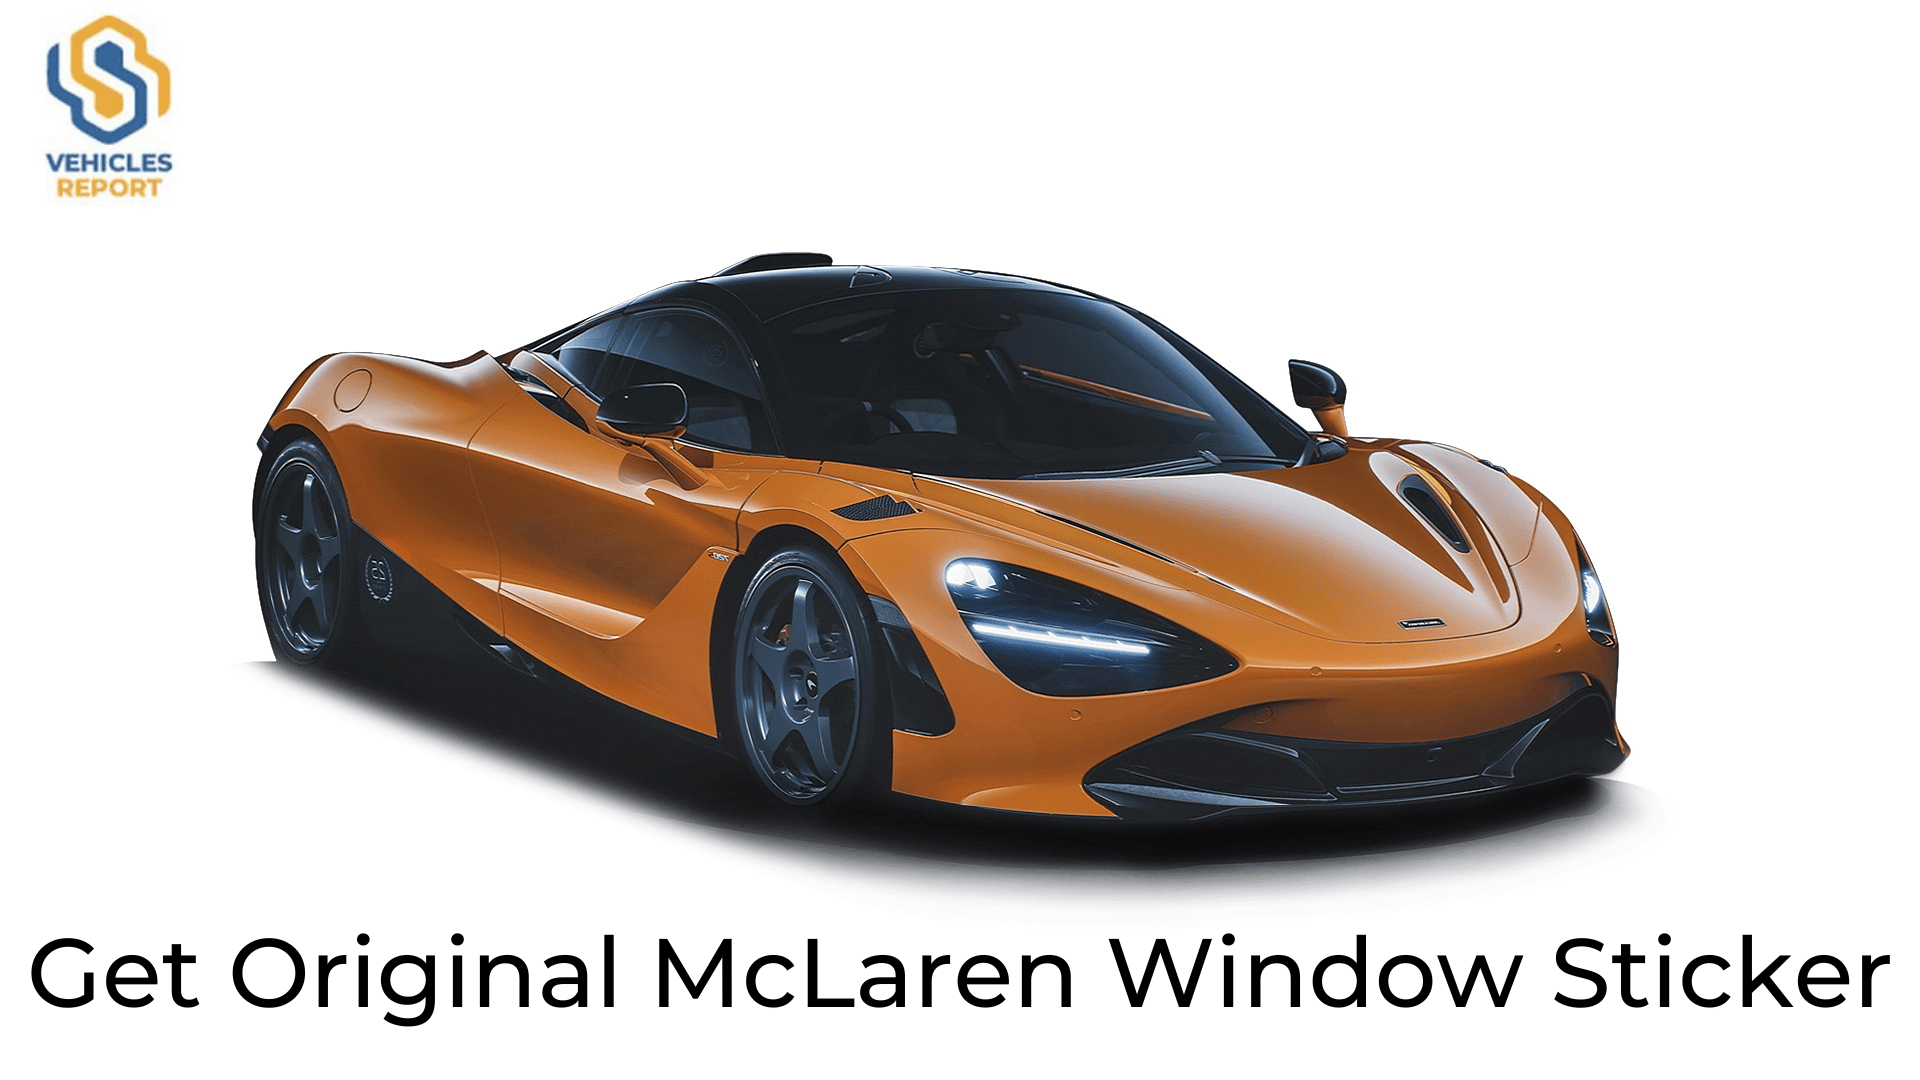 McLaren Window Sticker